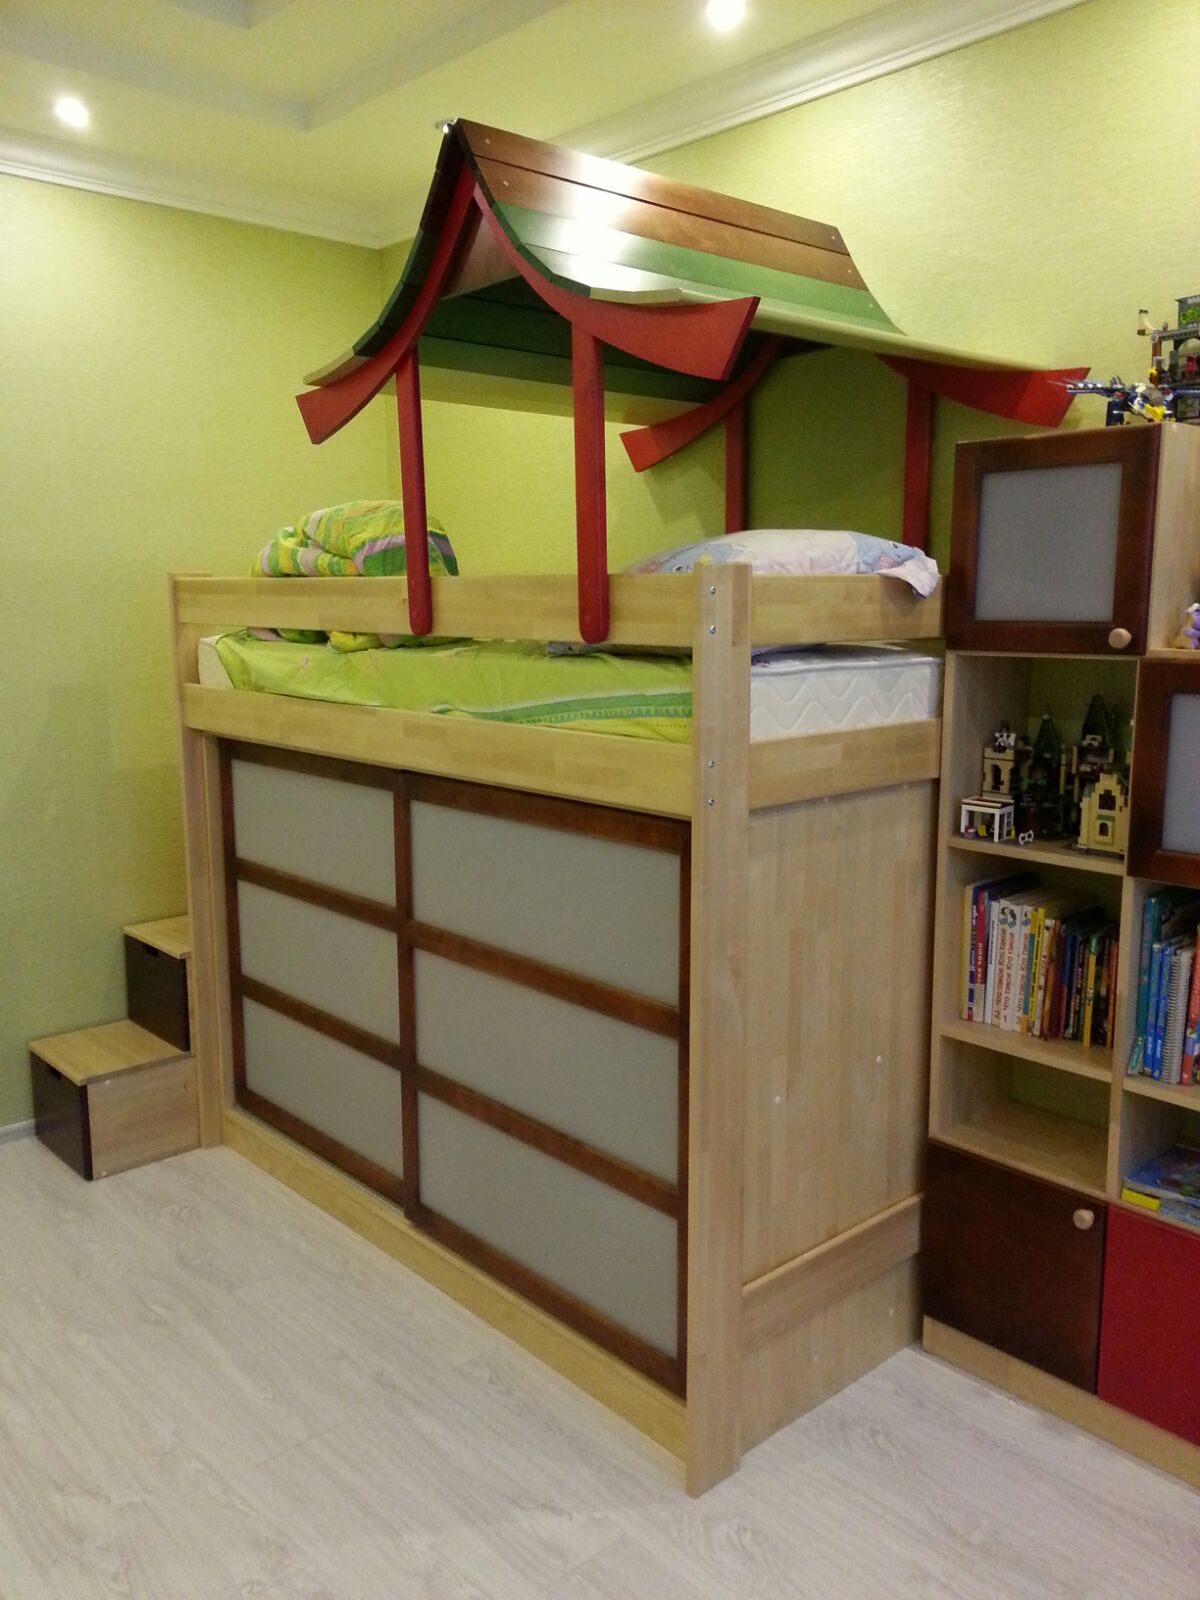 встроенный шкаф в кровать чердак в китайском стиле полосатая лошадка